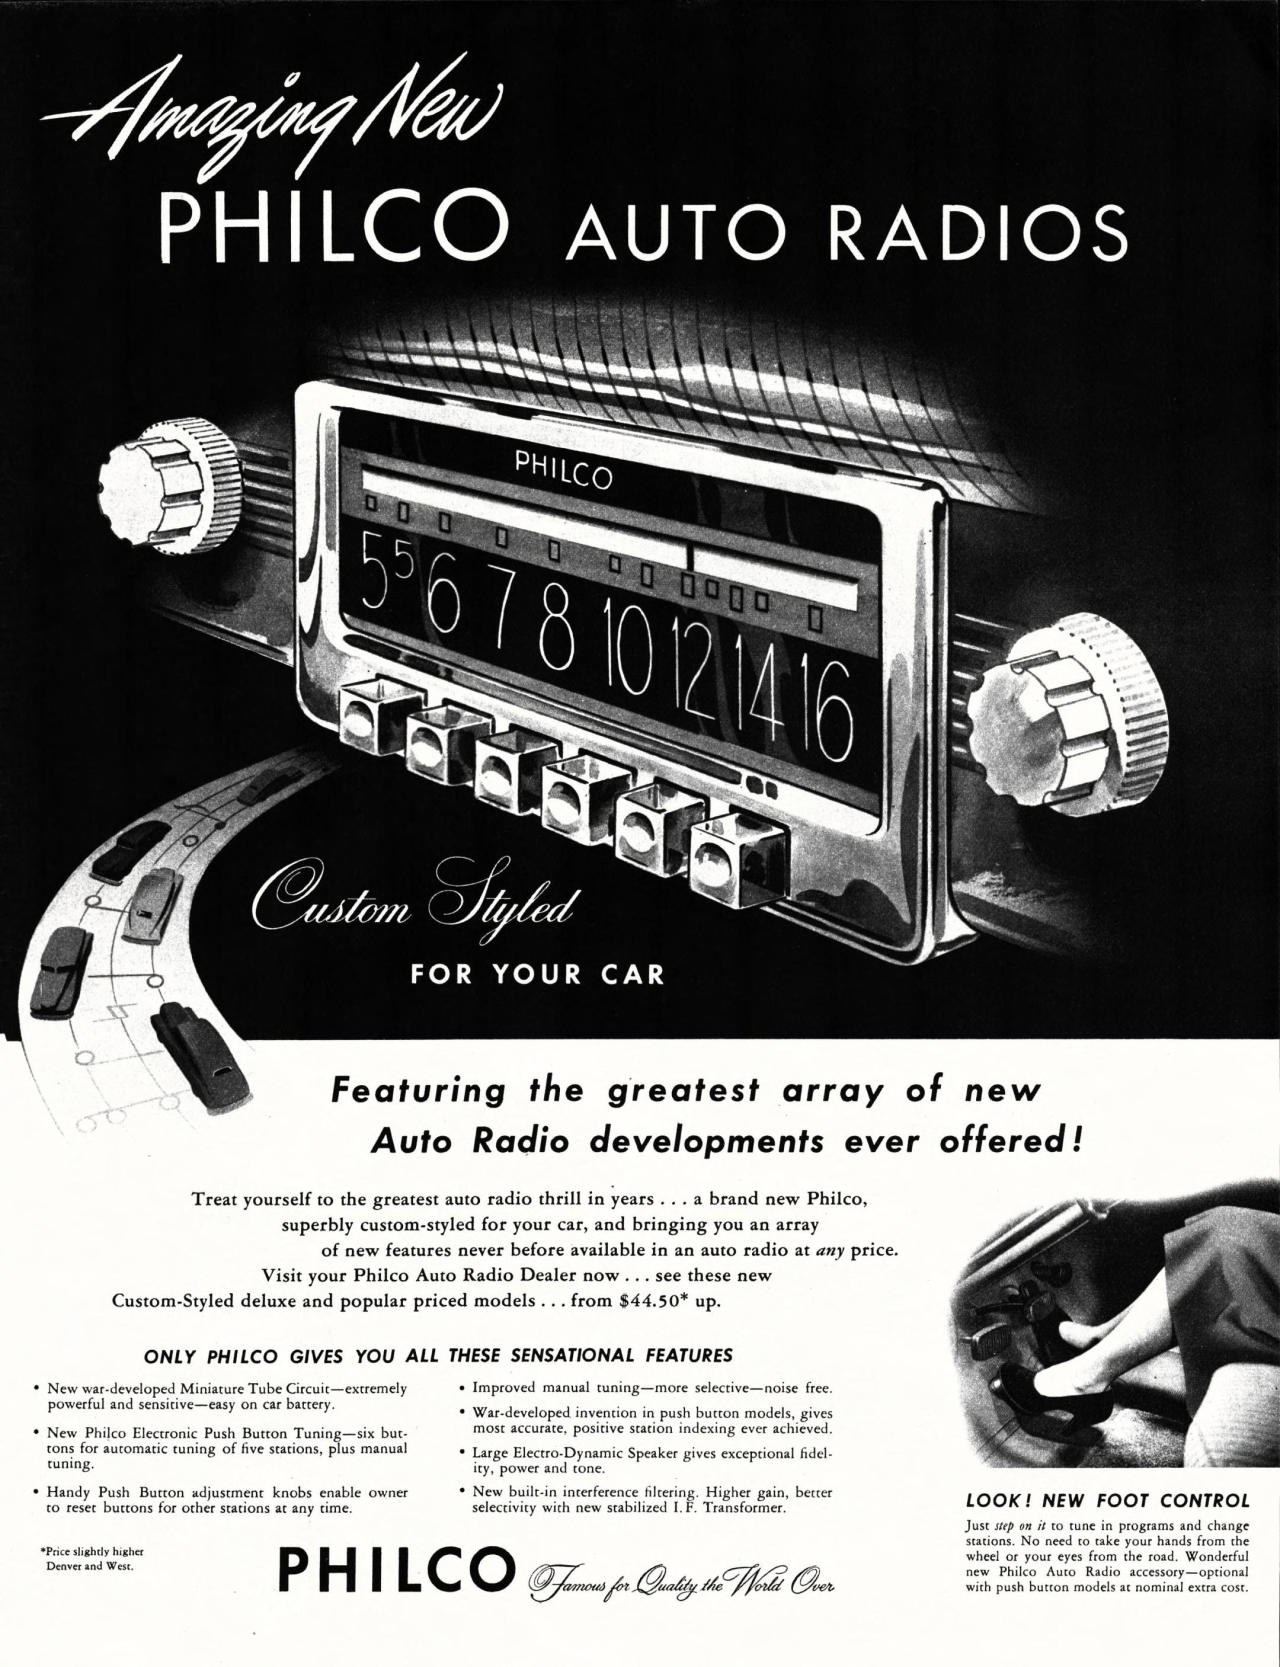 Philco Auto Radio - published in Collier's (Vol. 120, No. 25) - December 20, 1947